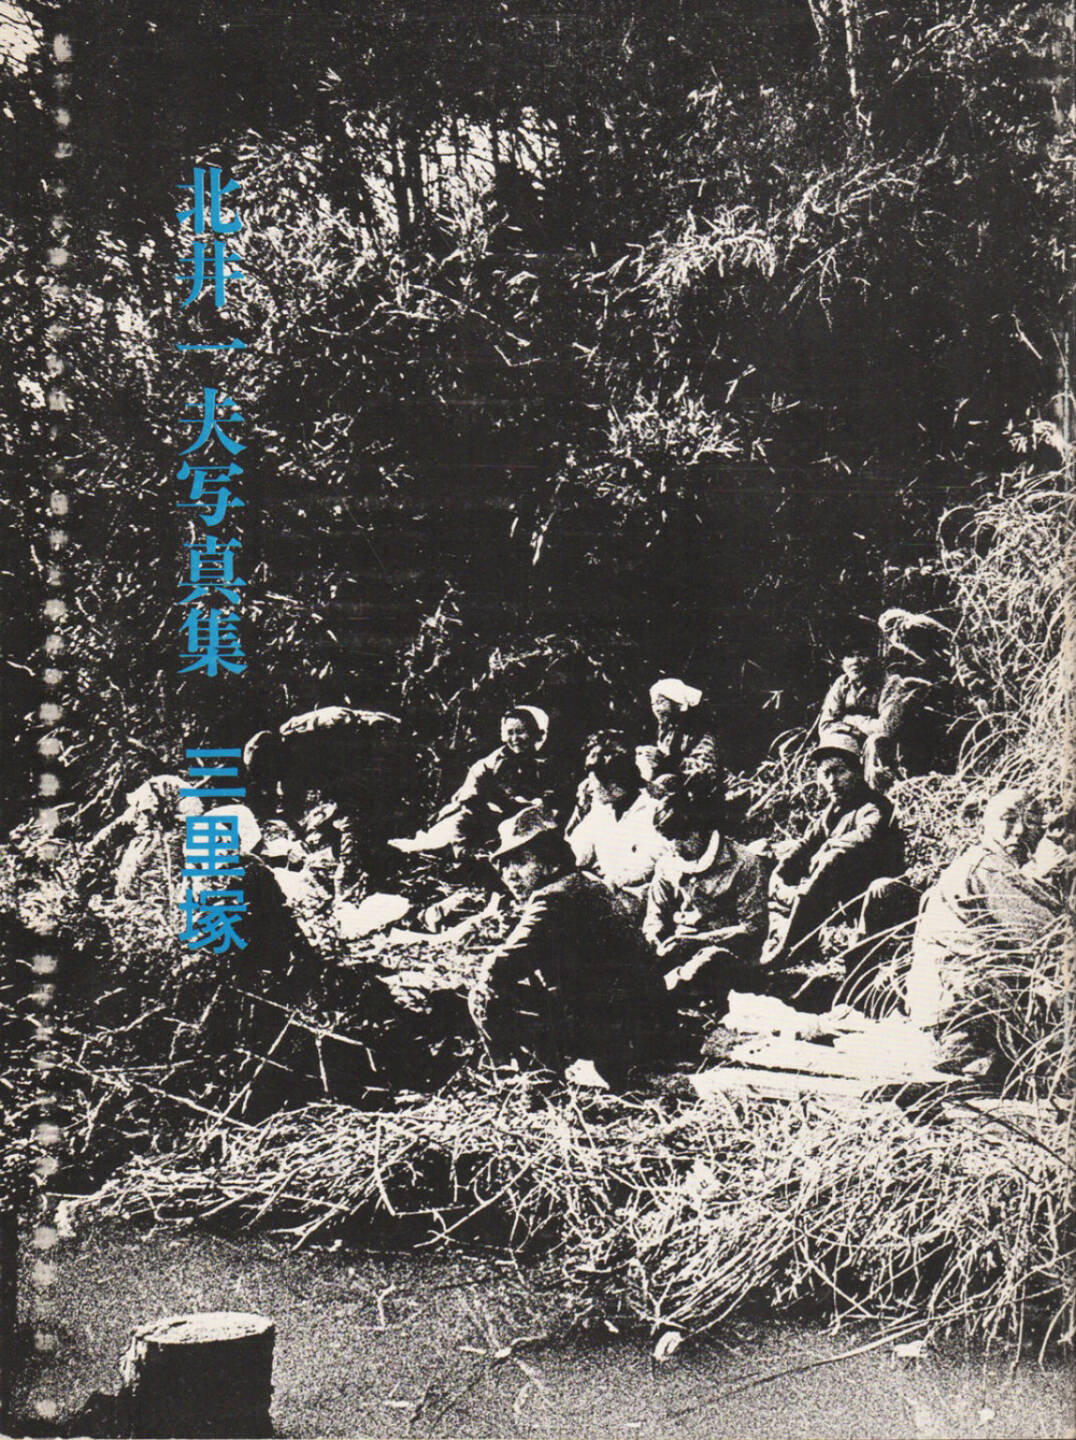 Kazuo Kitai - Sanrizuka 1969-1971, 600-800 Euro, http://josefchladek.com/book/kazuo_kitai_-_sanrizuka_1969-1971